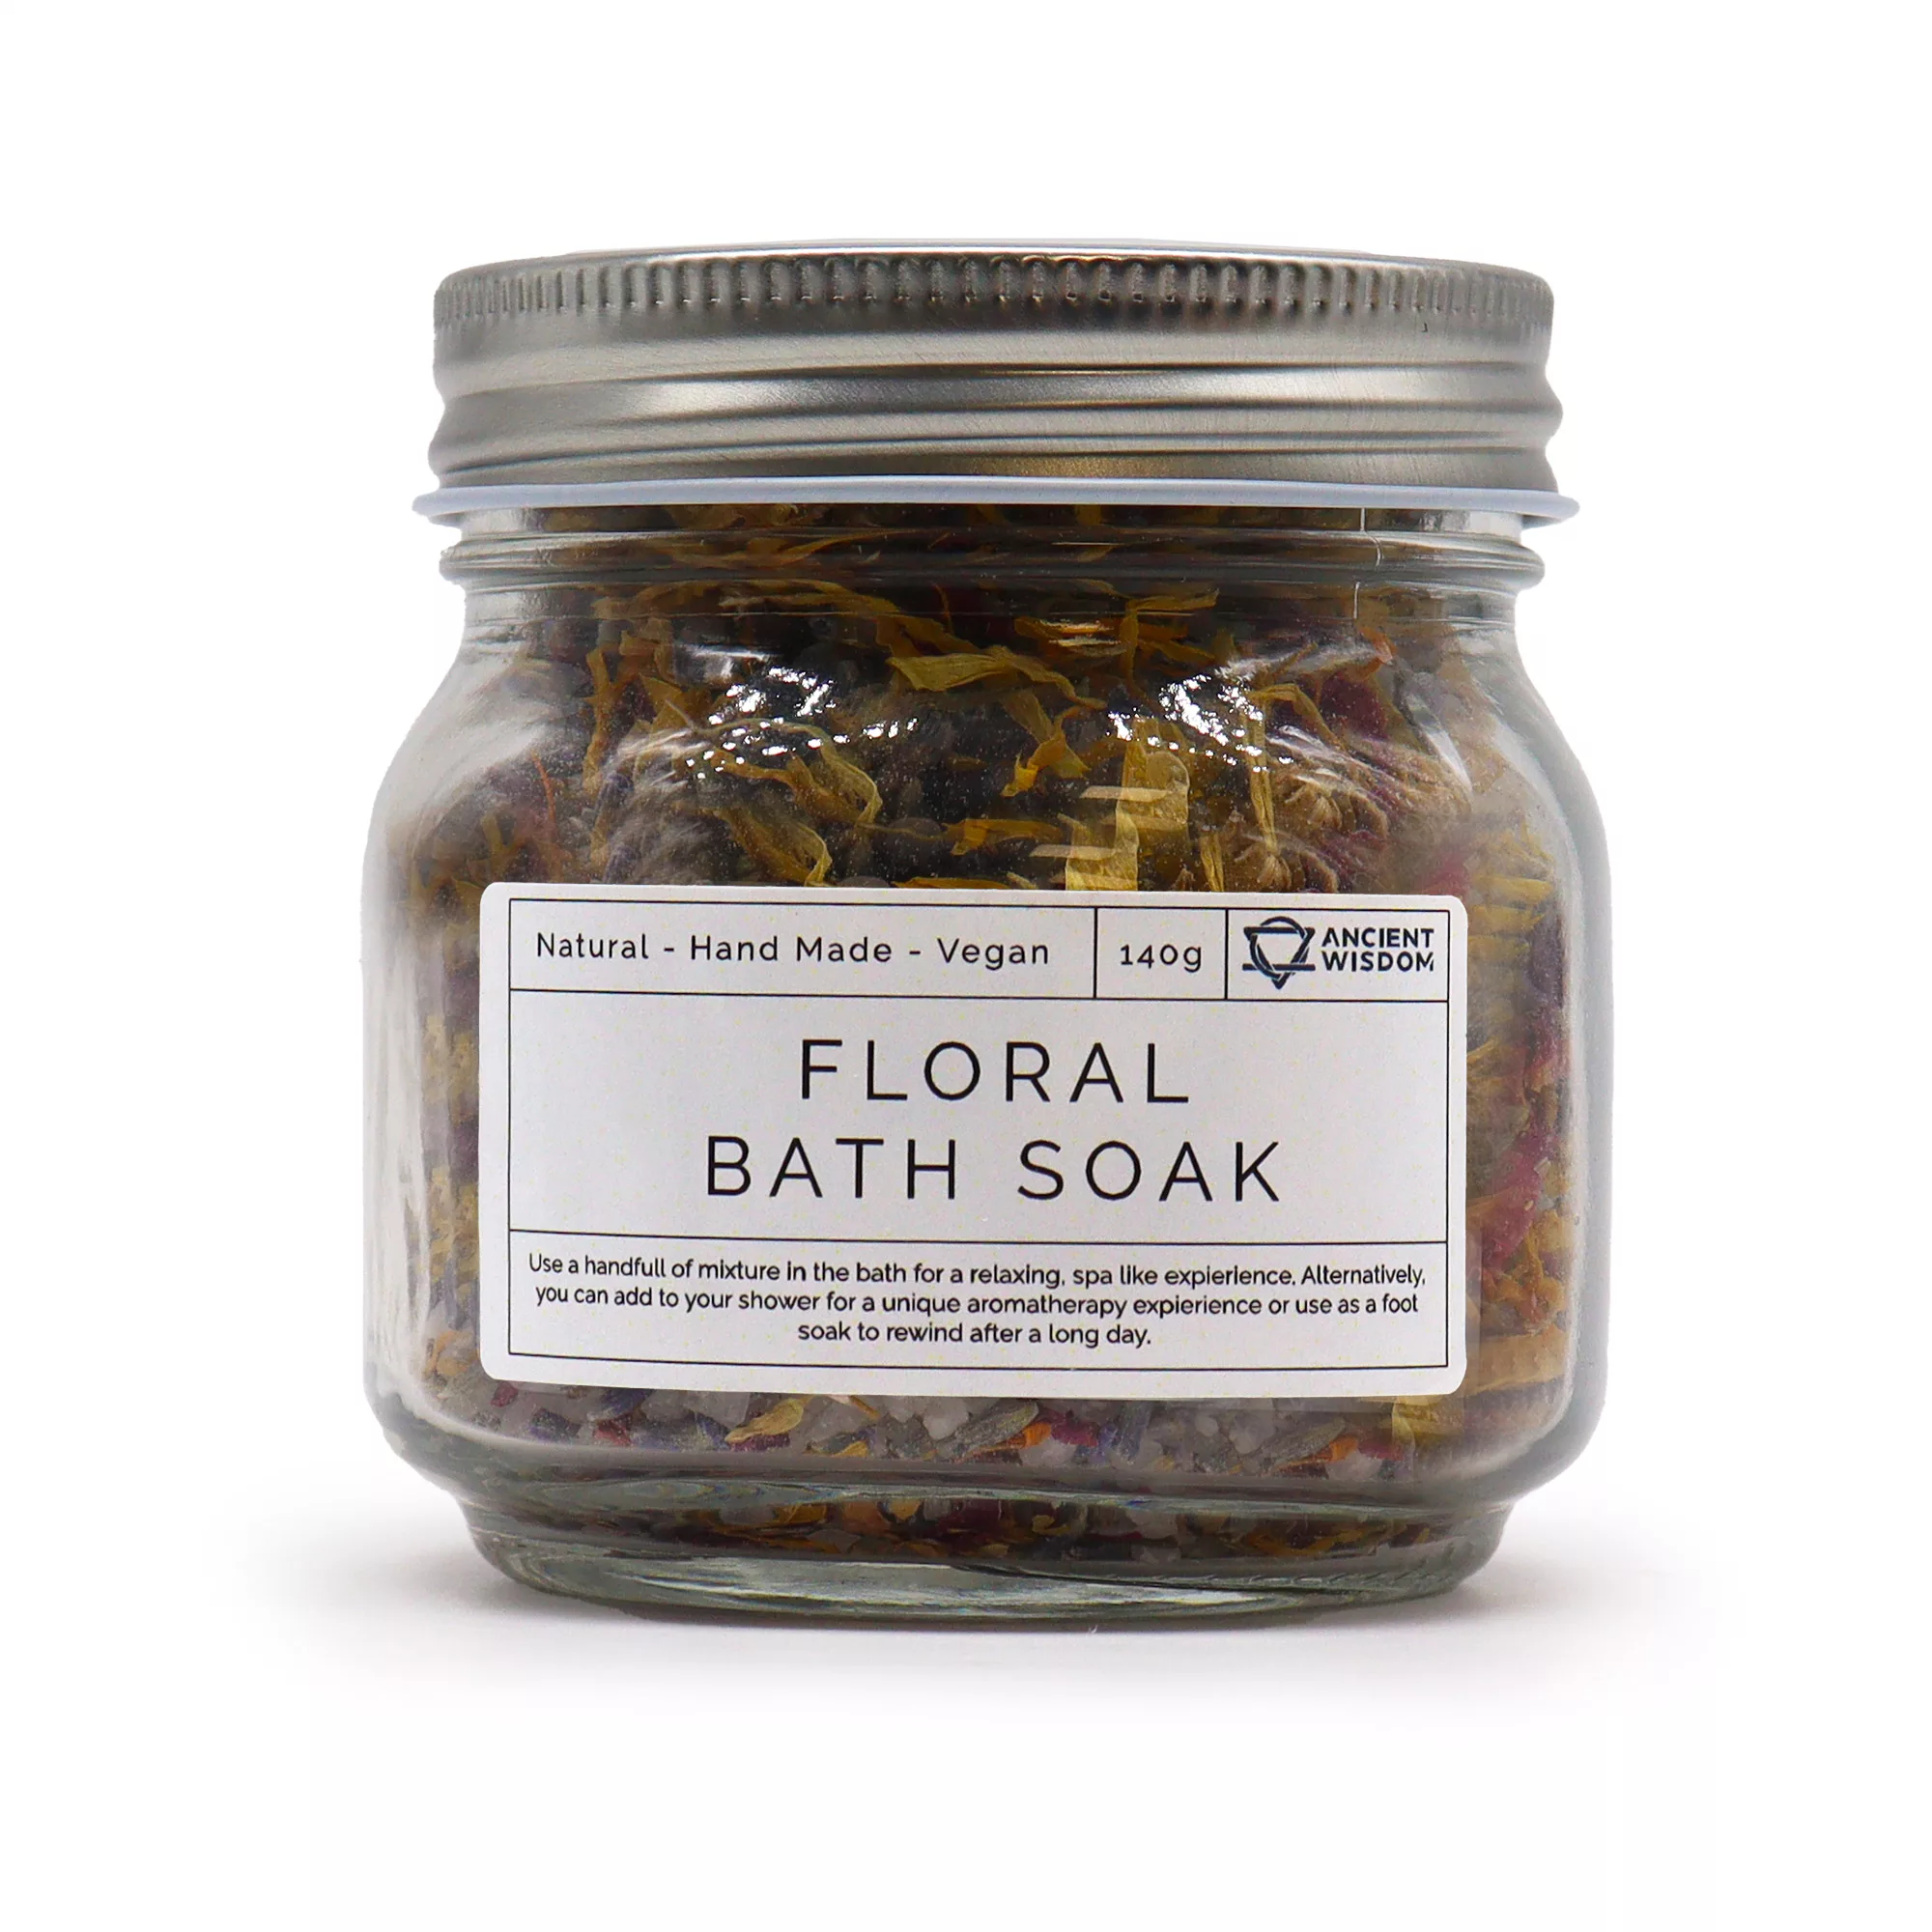 Floral Bath Soak & Facial Steam Blend